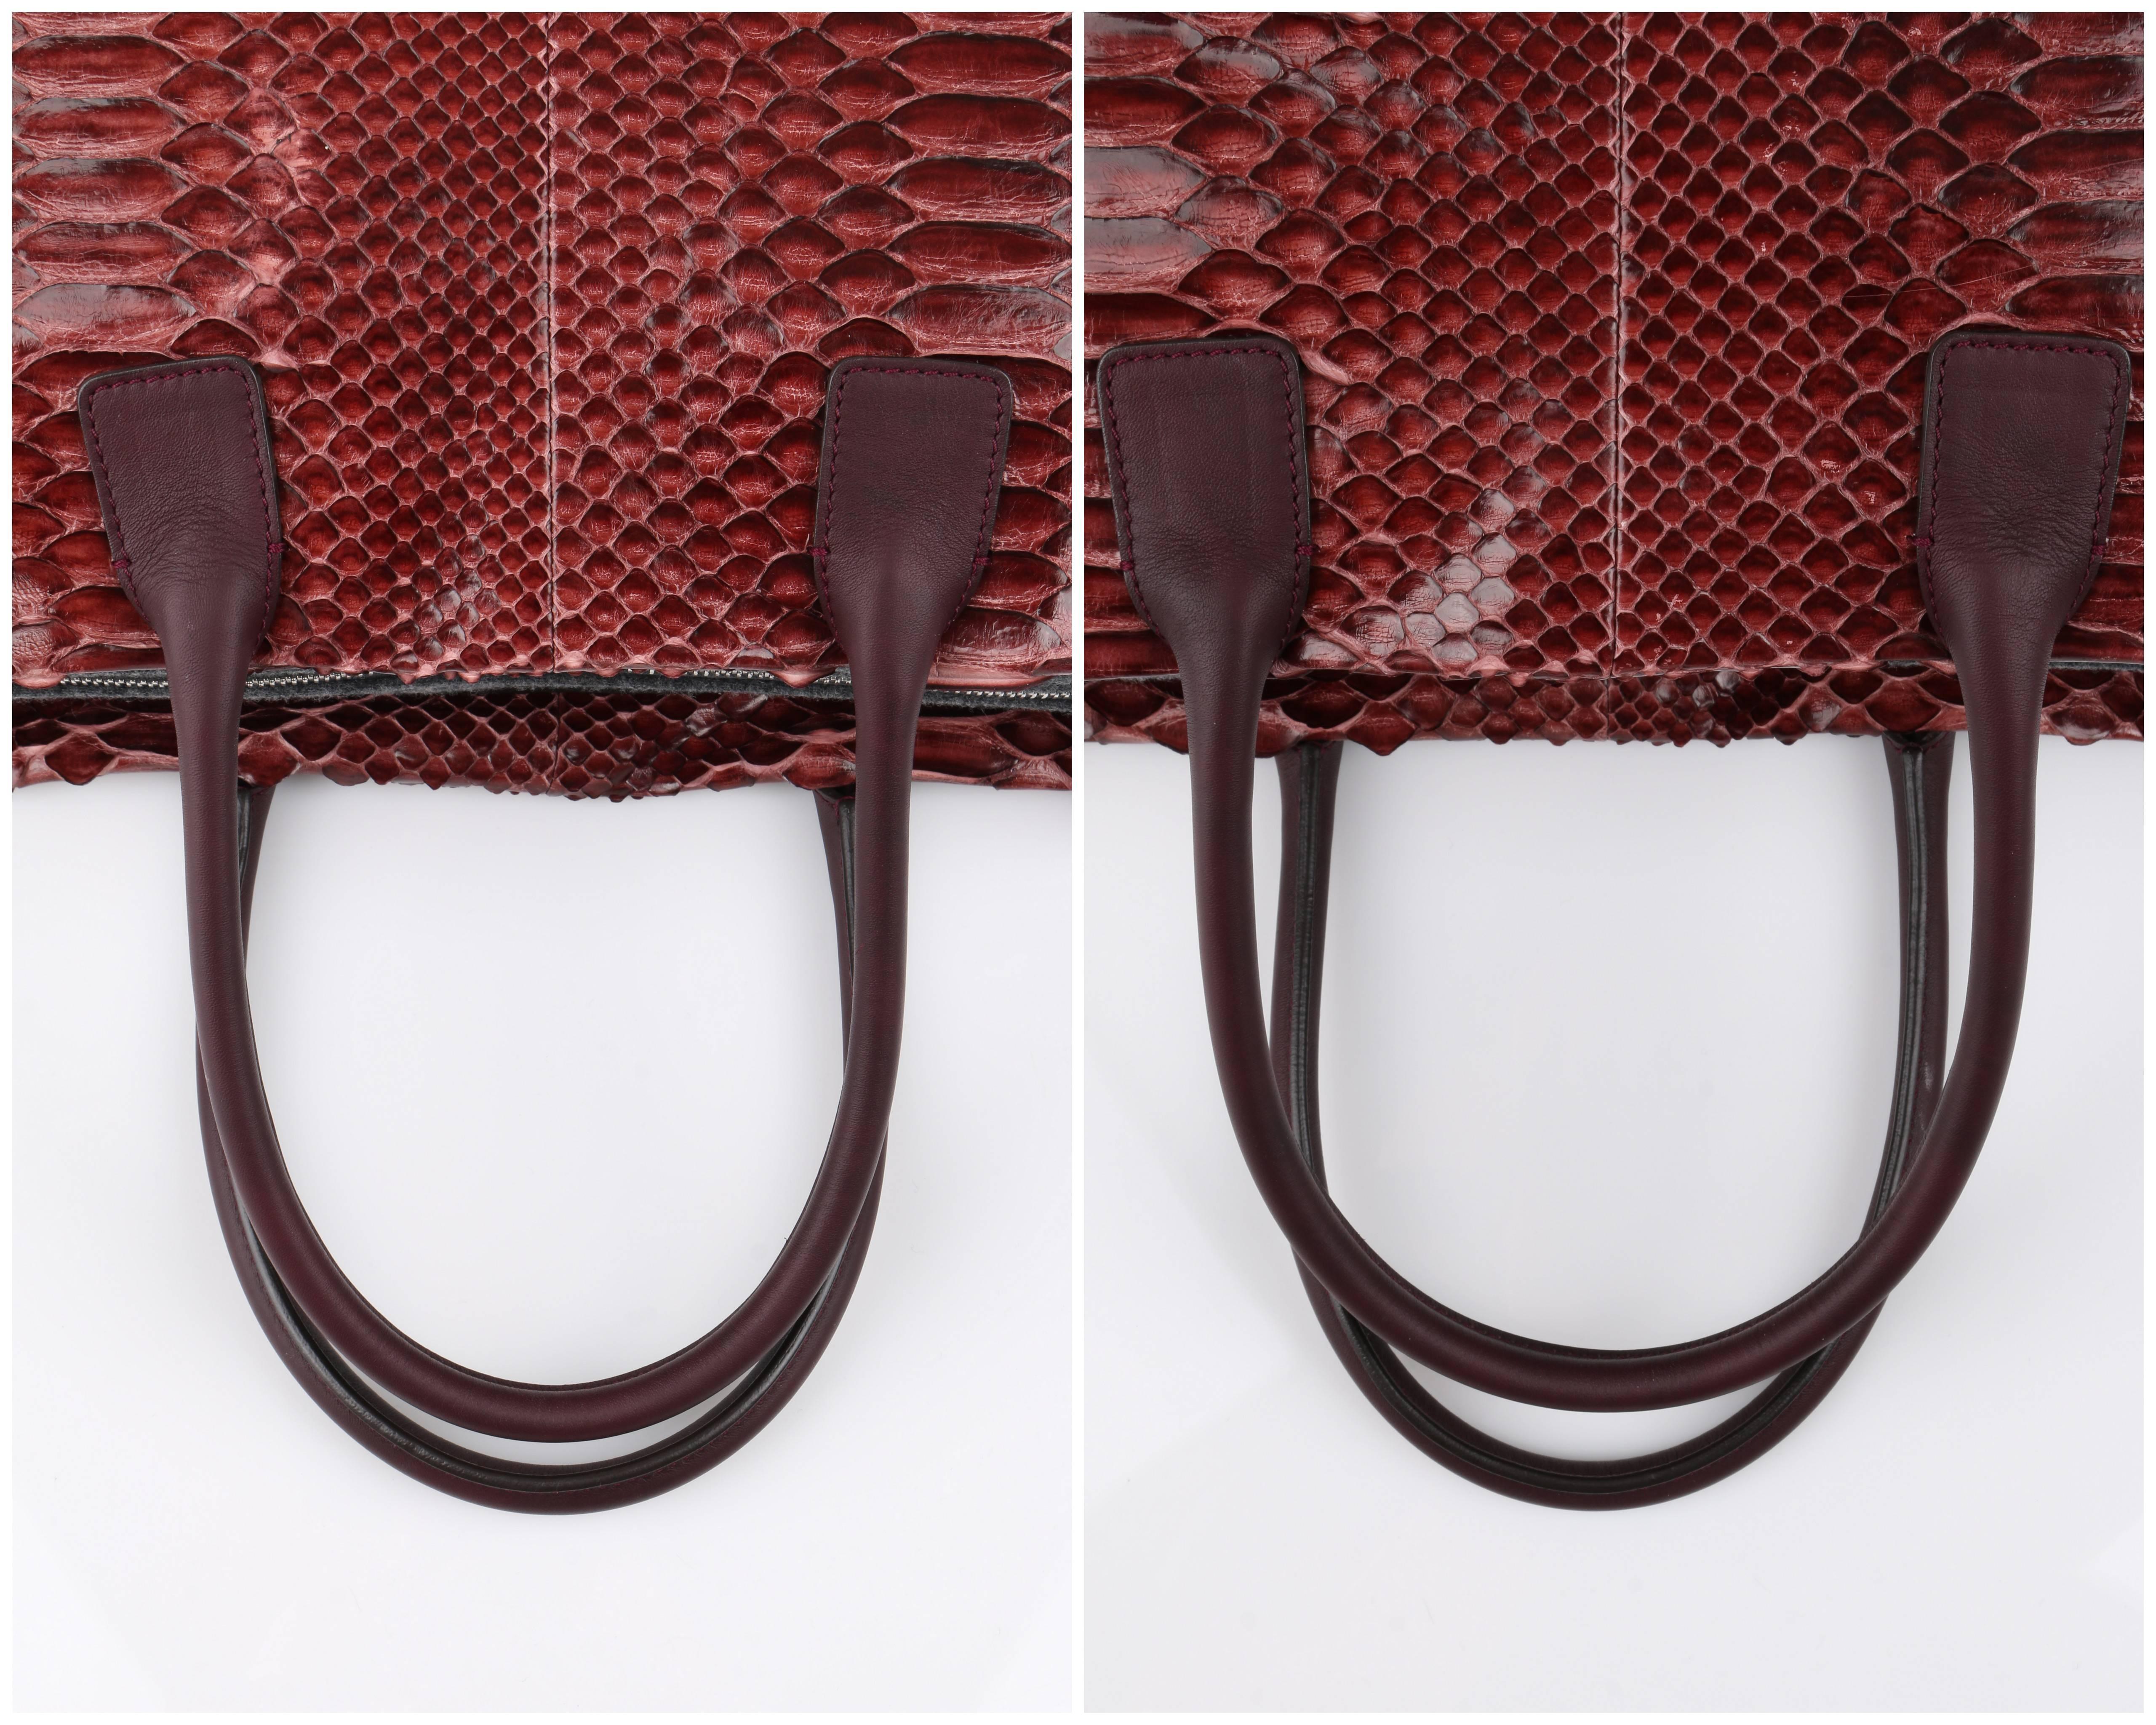 BRUNELLO CUCINELLI Burgundy Red Genuine Python Snakeskin Satchel Handbag Purse 4